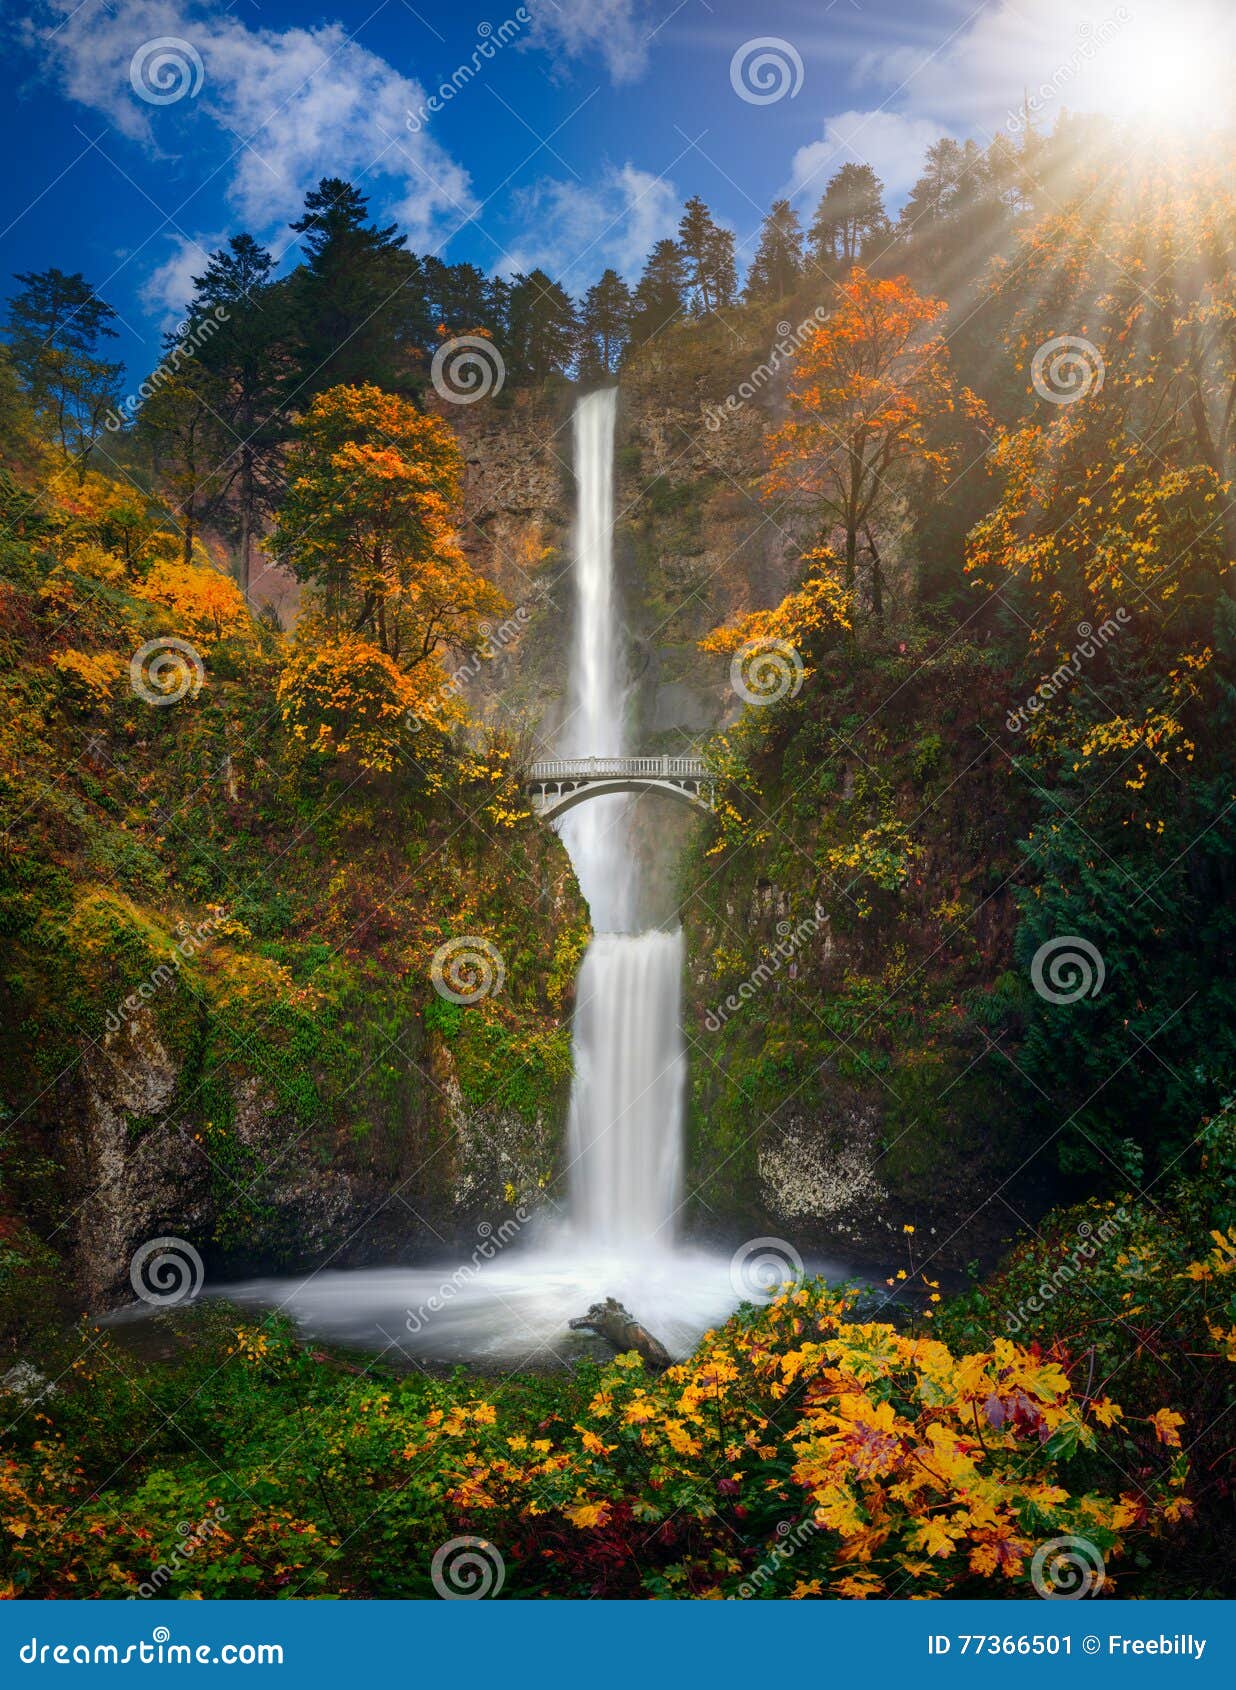 下载壁纸 摩特诺玛瀑布, 俄勒冈州, 哥伦比亚河峡谷, 山 免费为您的桌面分辨率的壁纸 2048x2048 — 图片 №636676